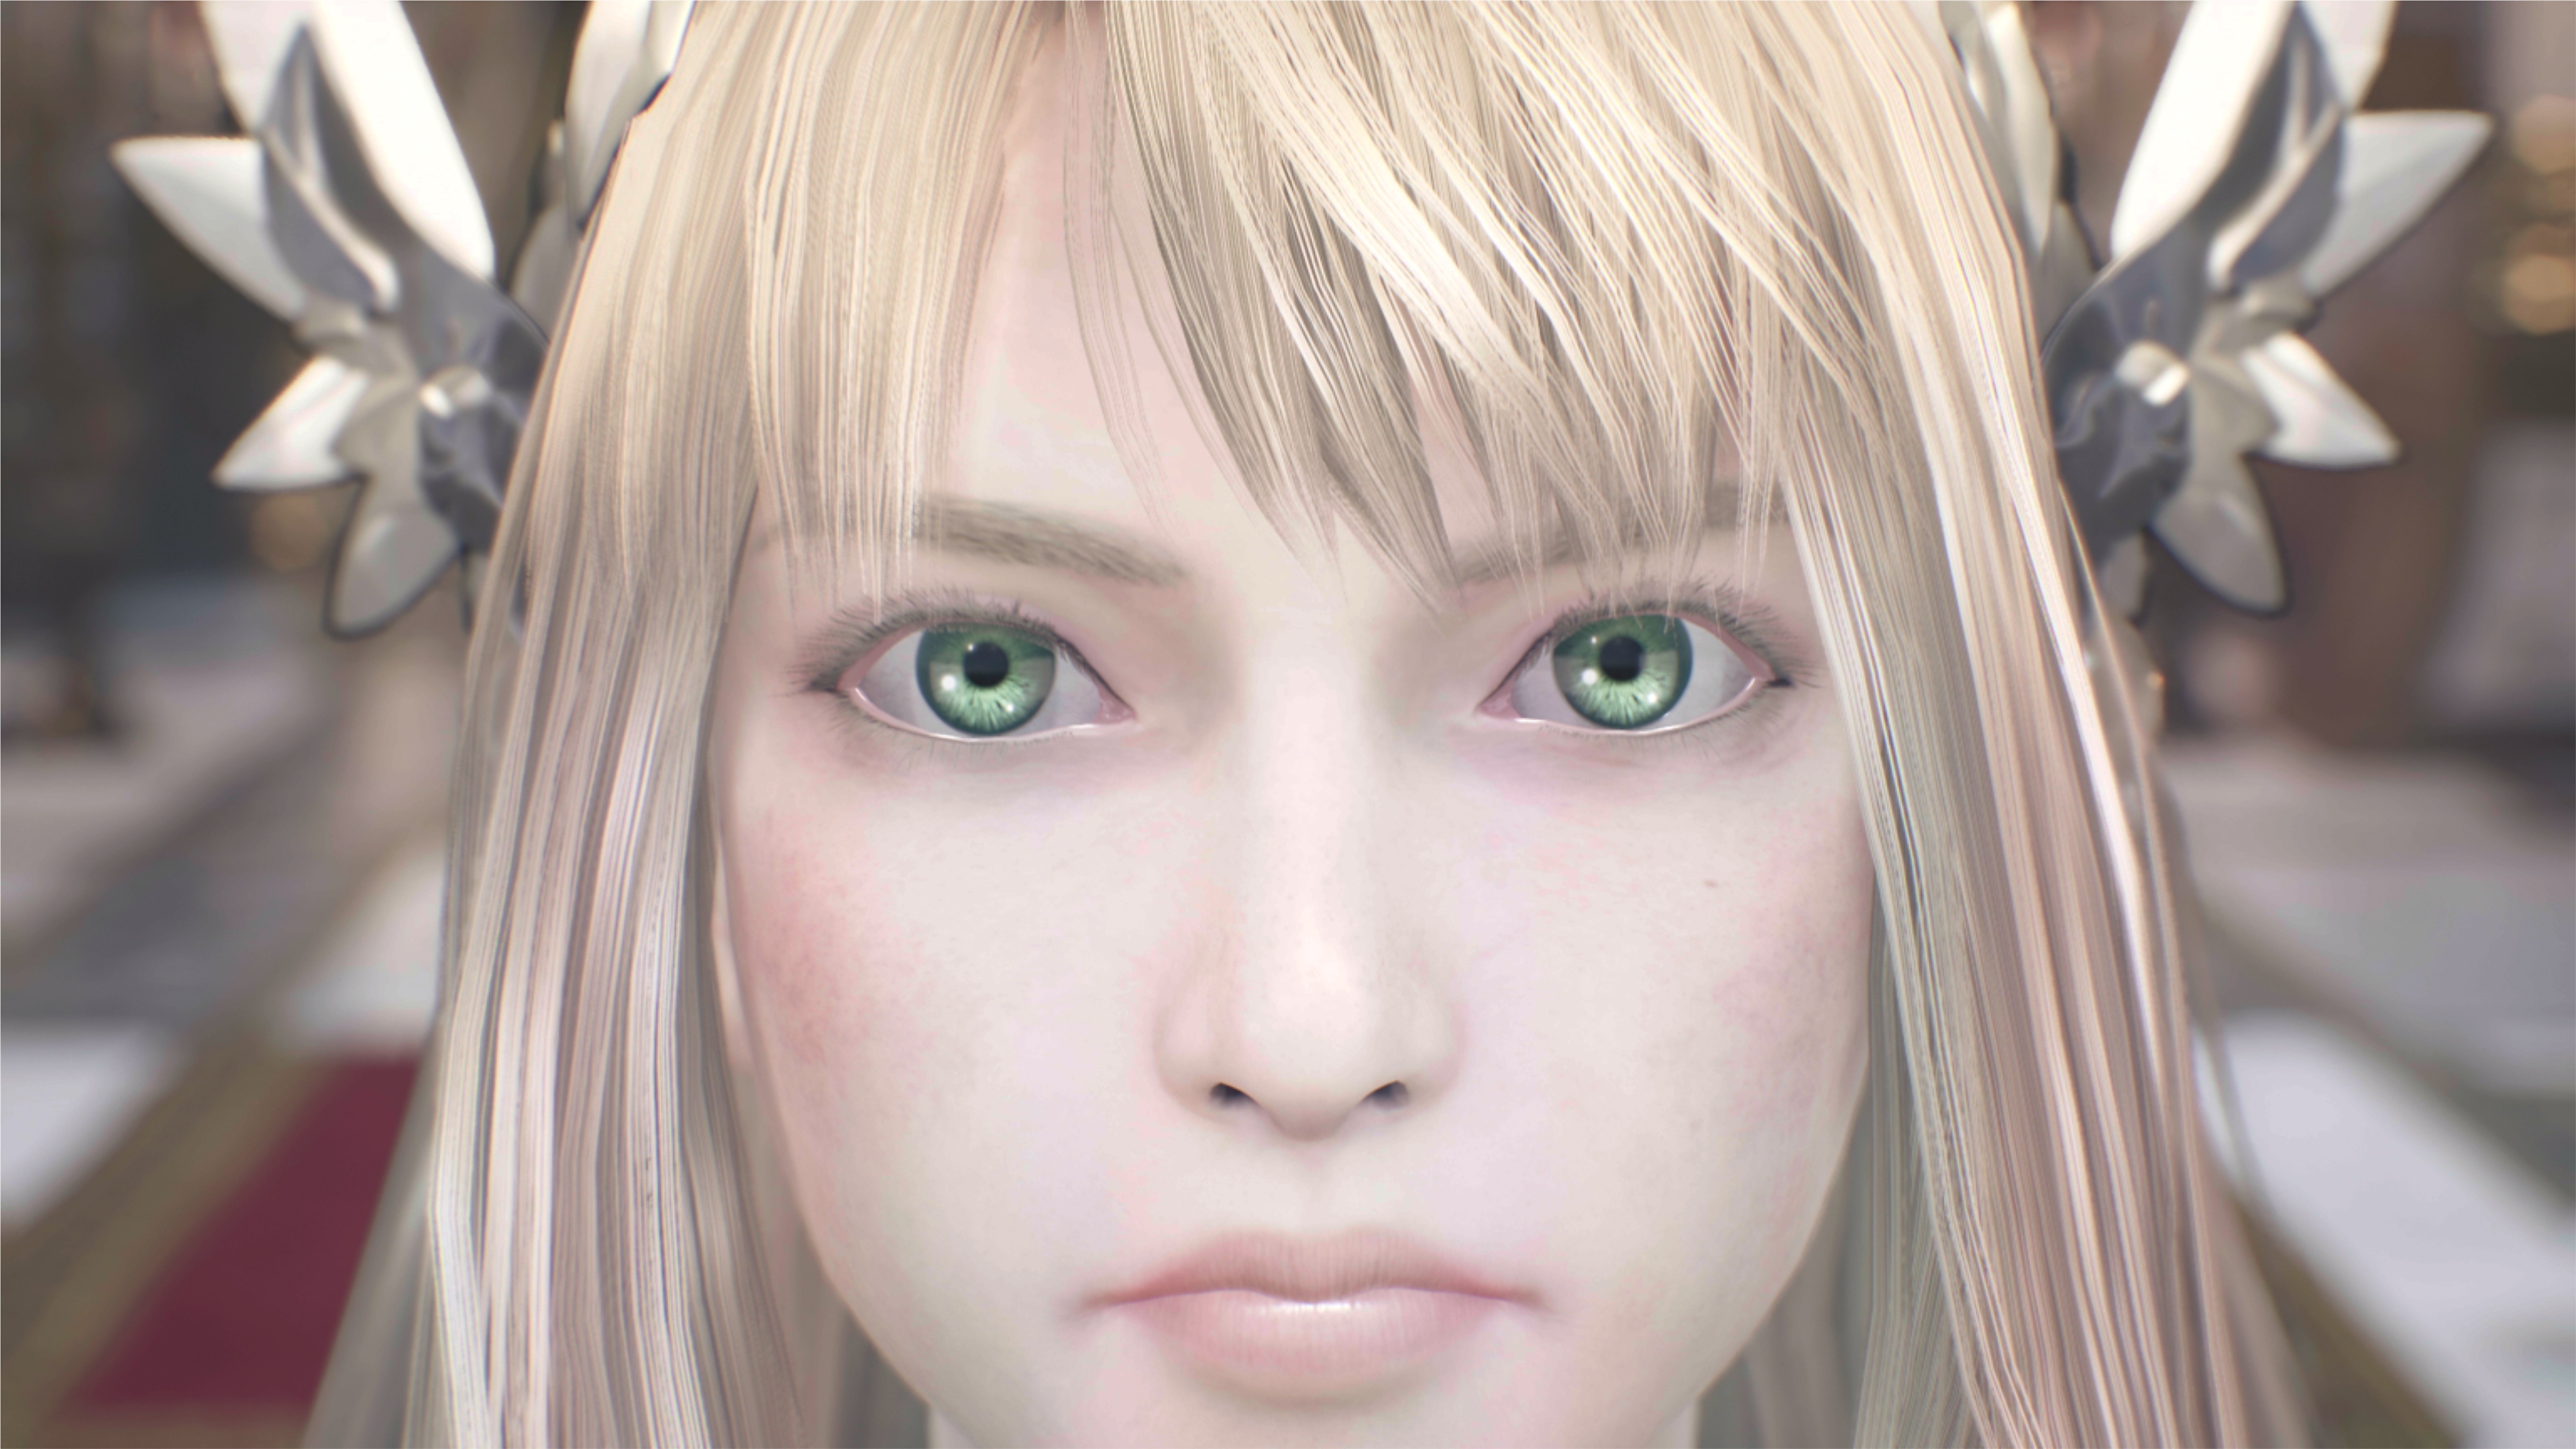 Valkyrie Elysium screenshot met een close-up van een personage met blond haar en groene ogen